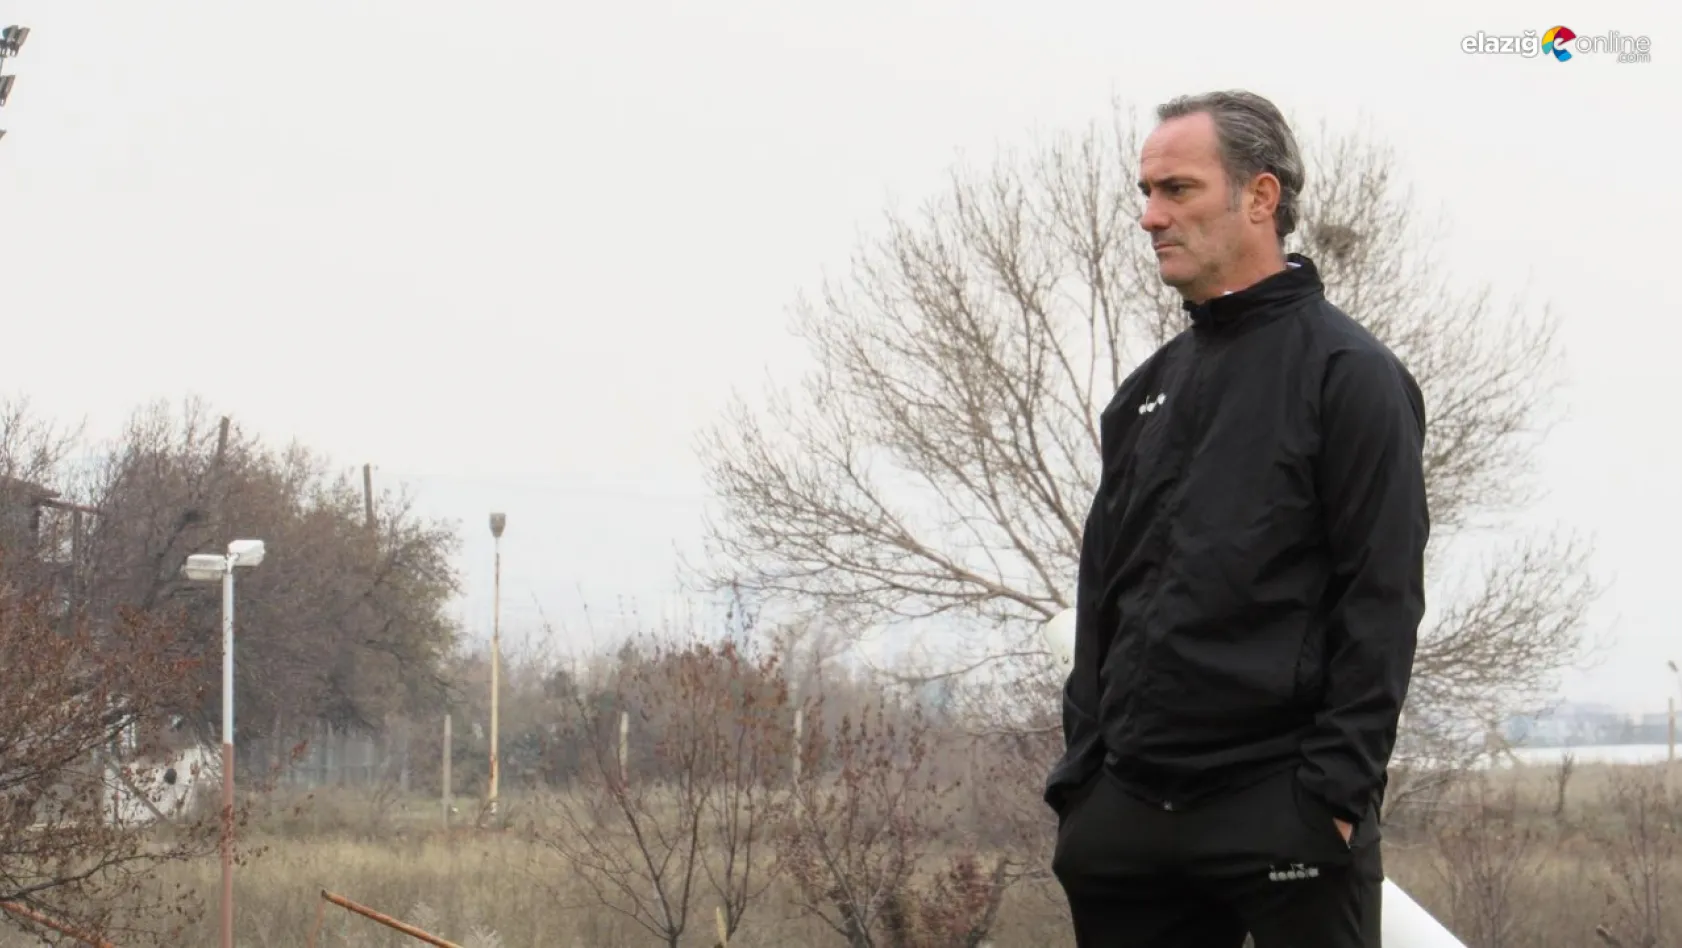 Elazığspor Teknik Direktörü Biçer'in acı günü